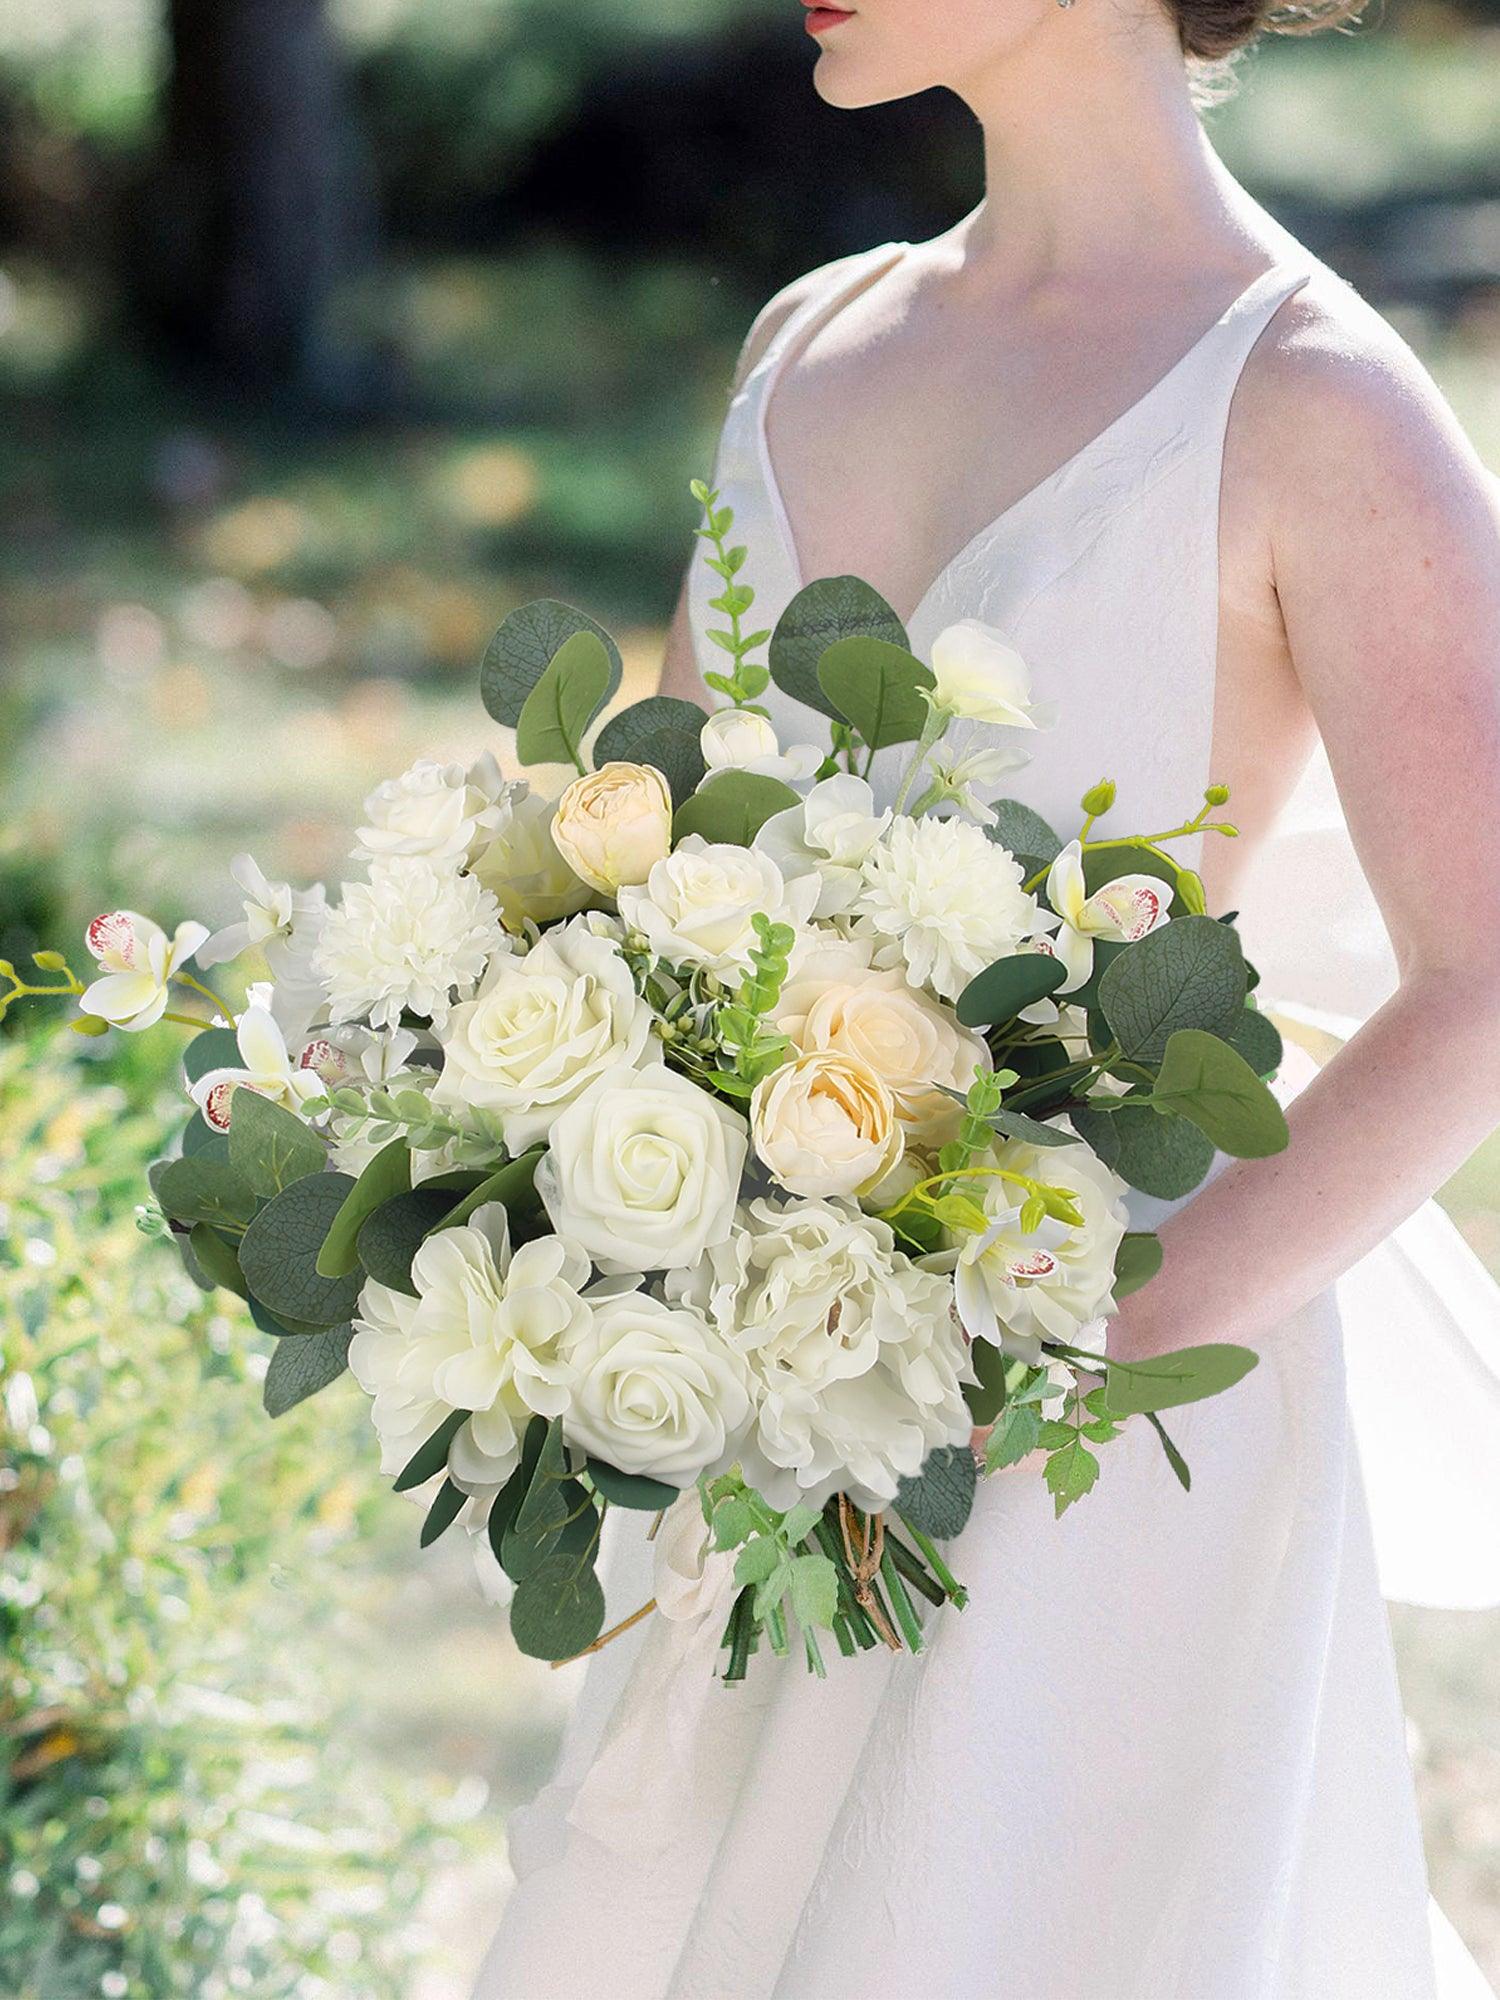 16.5 inch wide Sage Green & White Bridal Bouquet